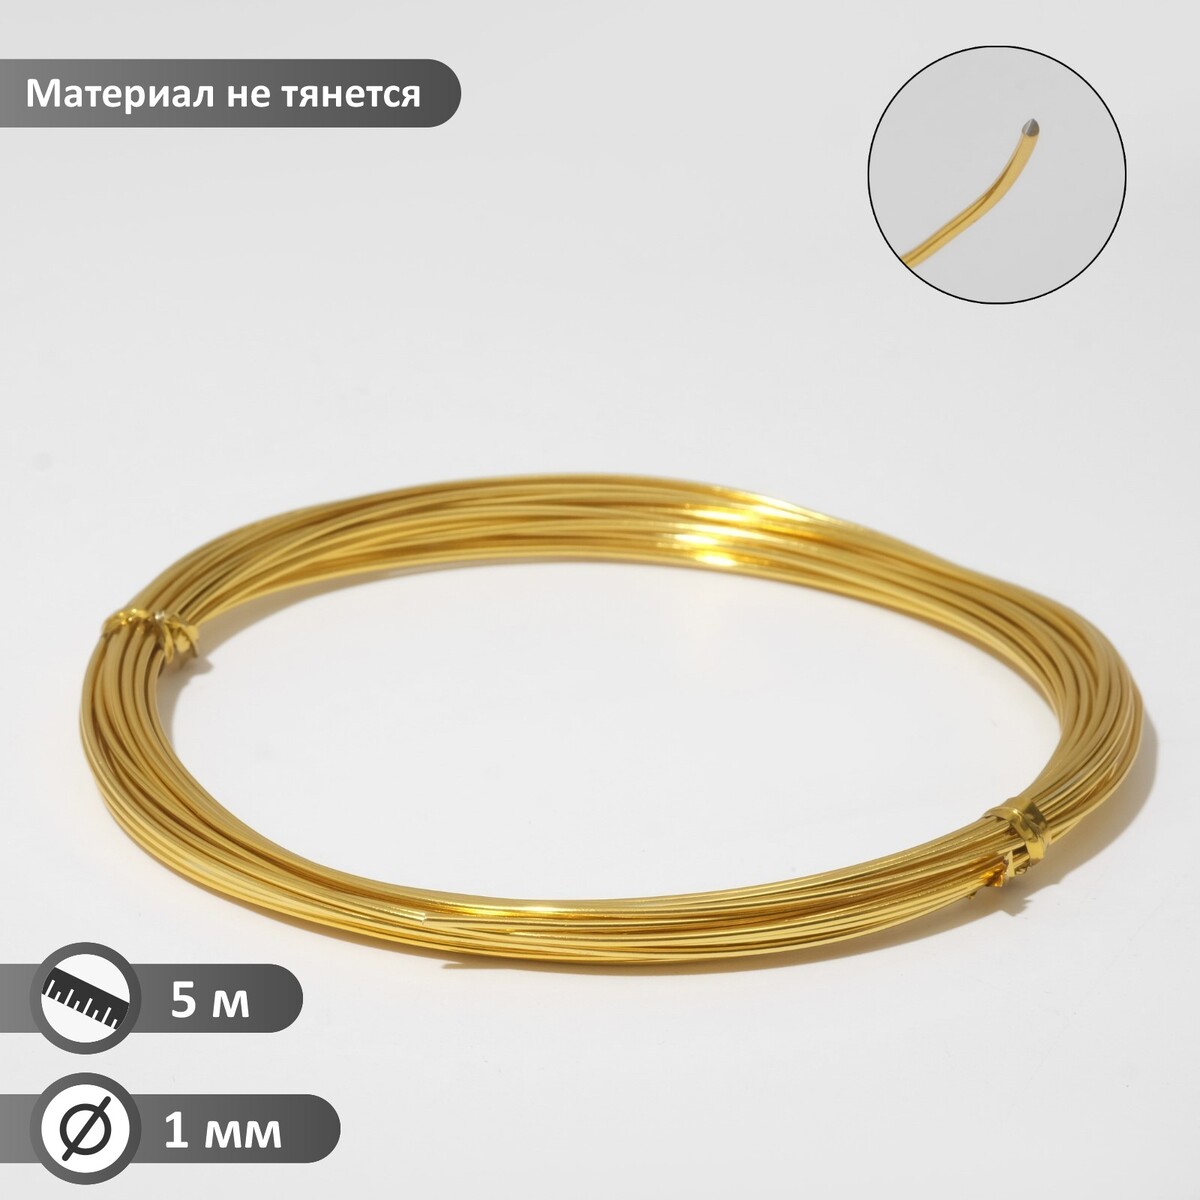 Проволока для плетения d=1 мм, намотка 5 м, цвет золото проволока для рукоделия с нейлоновым покрытием d 0 45 мм 10 м золото